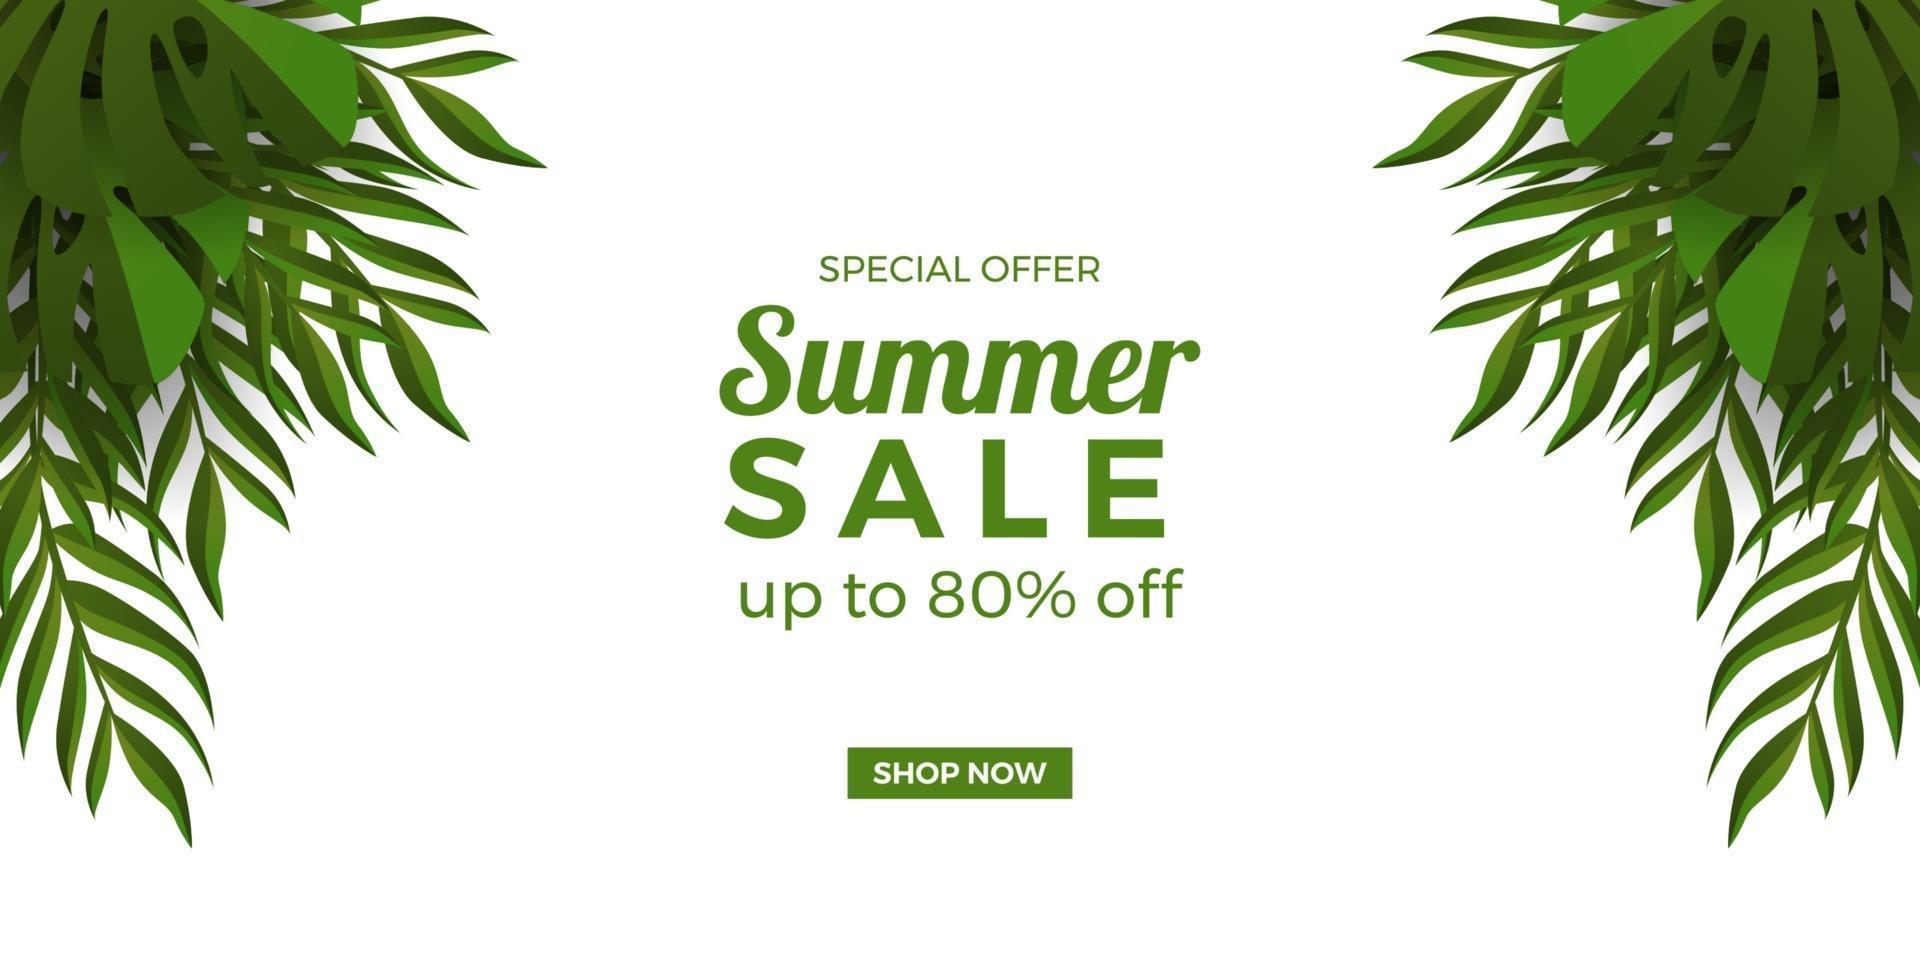 promozione banner offerta saldi estivi con decorazione cornice foglie verdi tropicali con sfondo bianco vettore